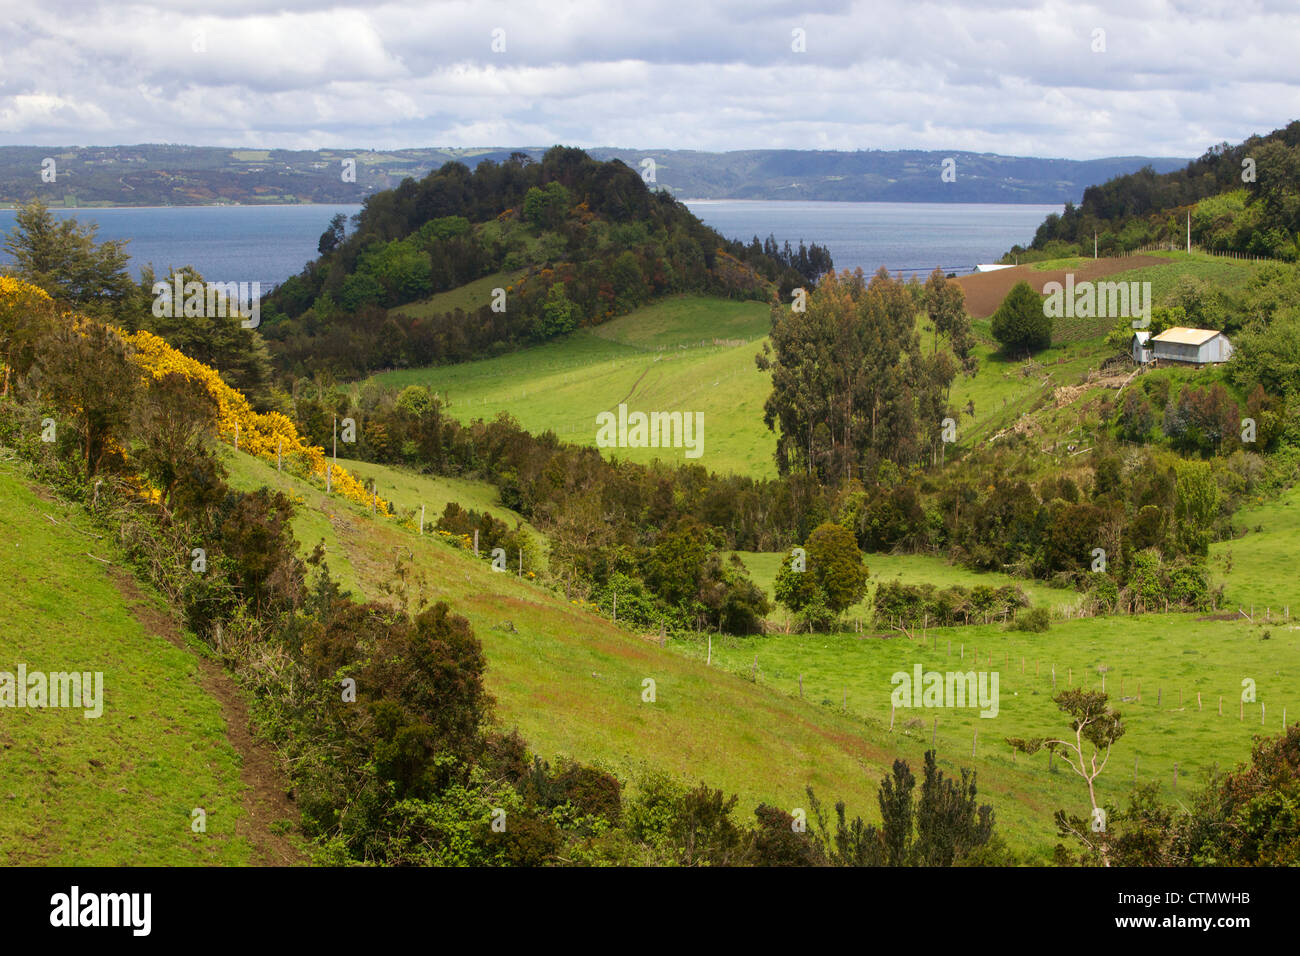 Ondulata campagna lussureggiante, Isola di Chiloe, regione de Los Lagos, Patagonia, Cile, Sud America Foto Stock